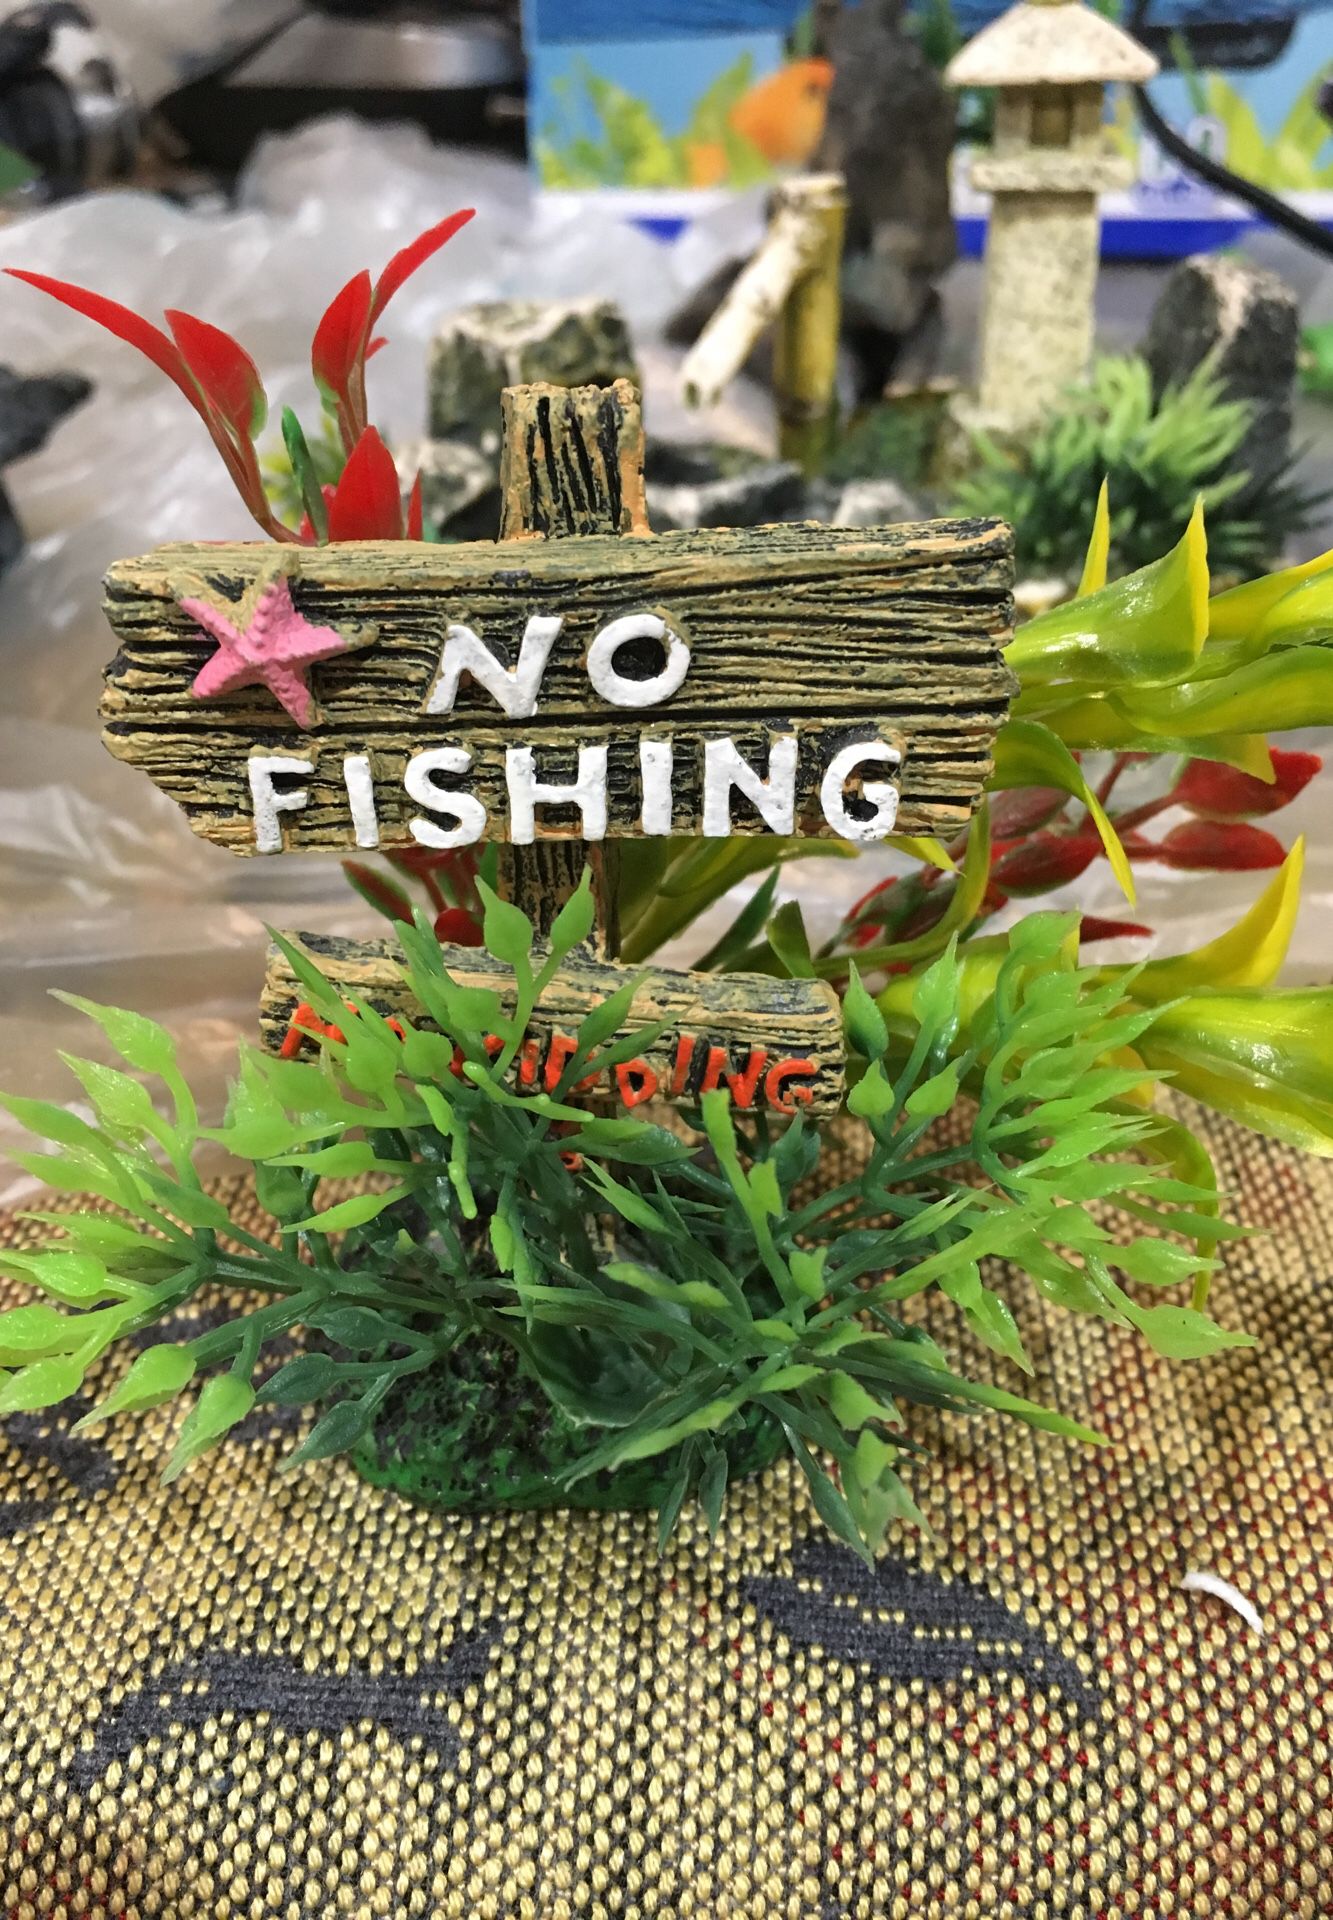 No fishing Fish tank decoration